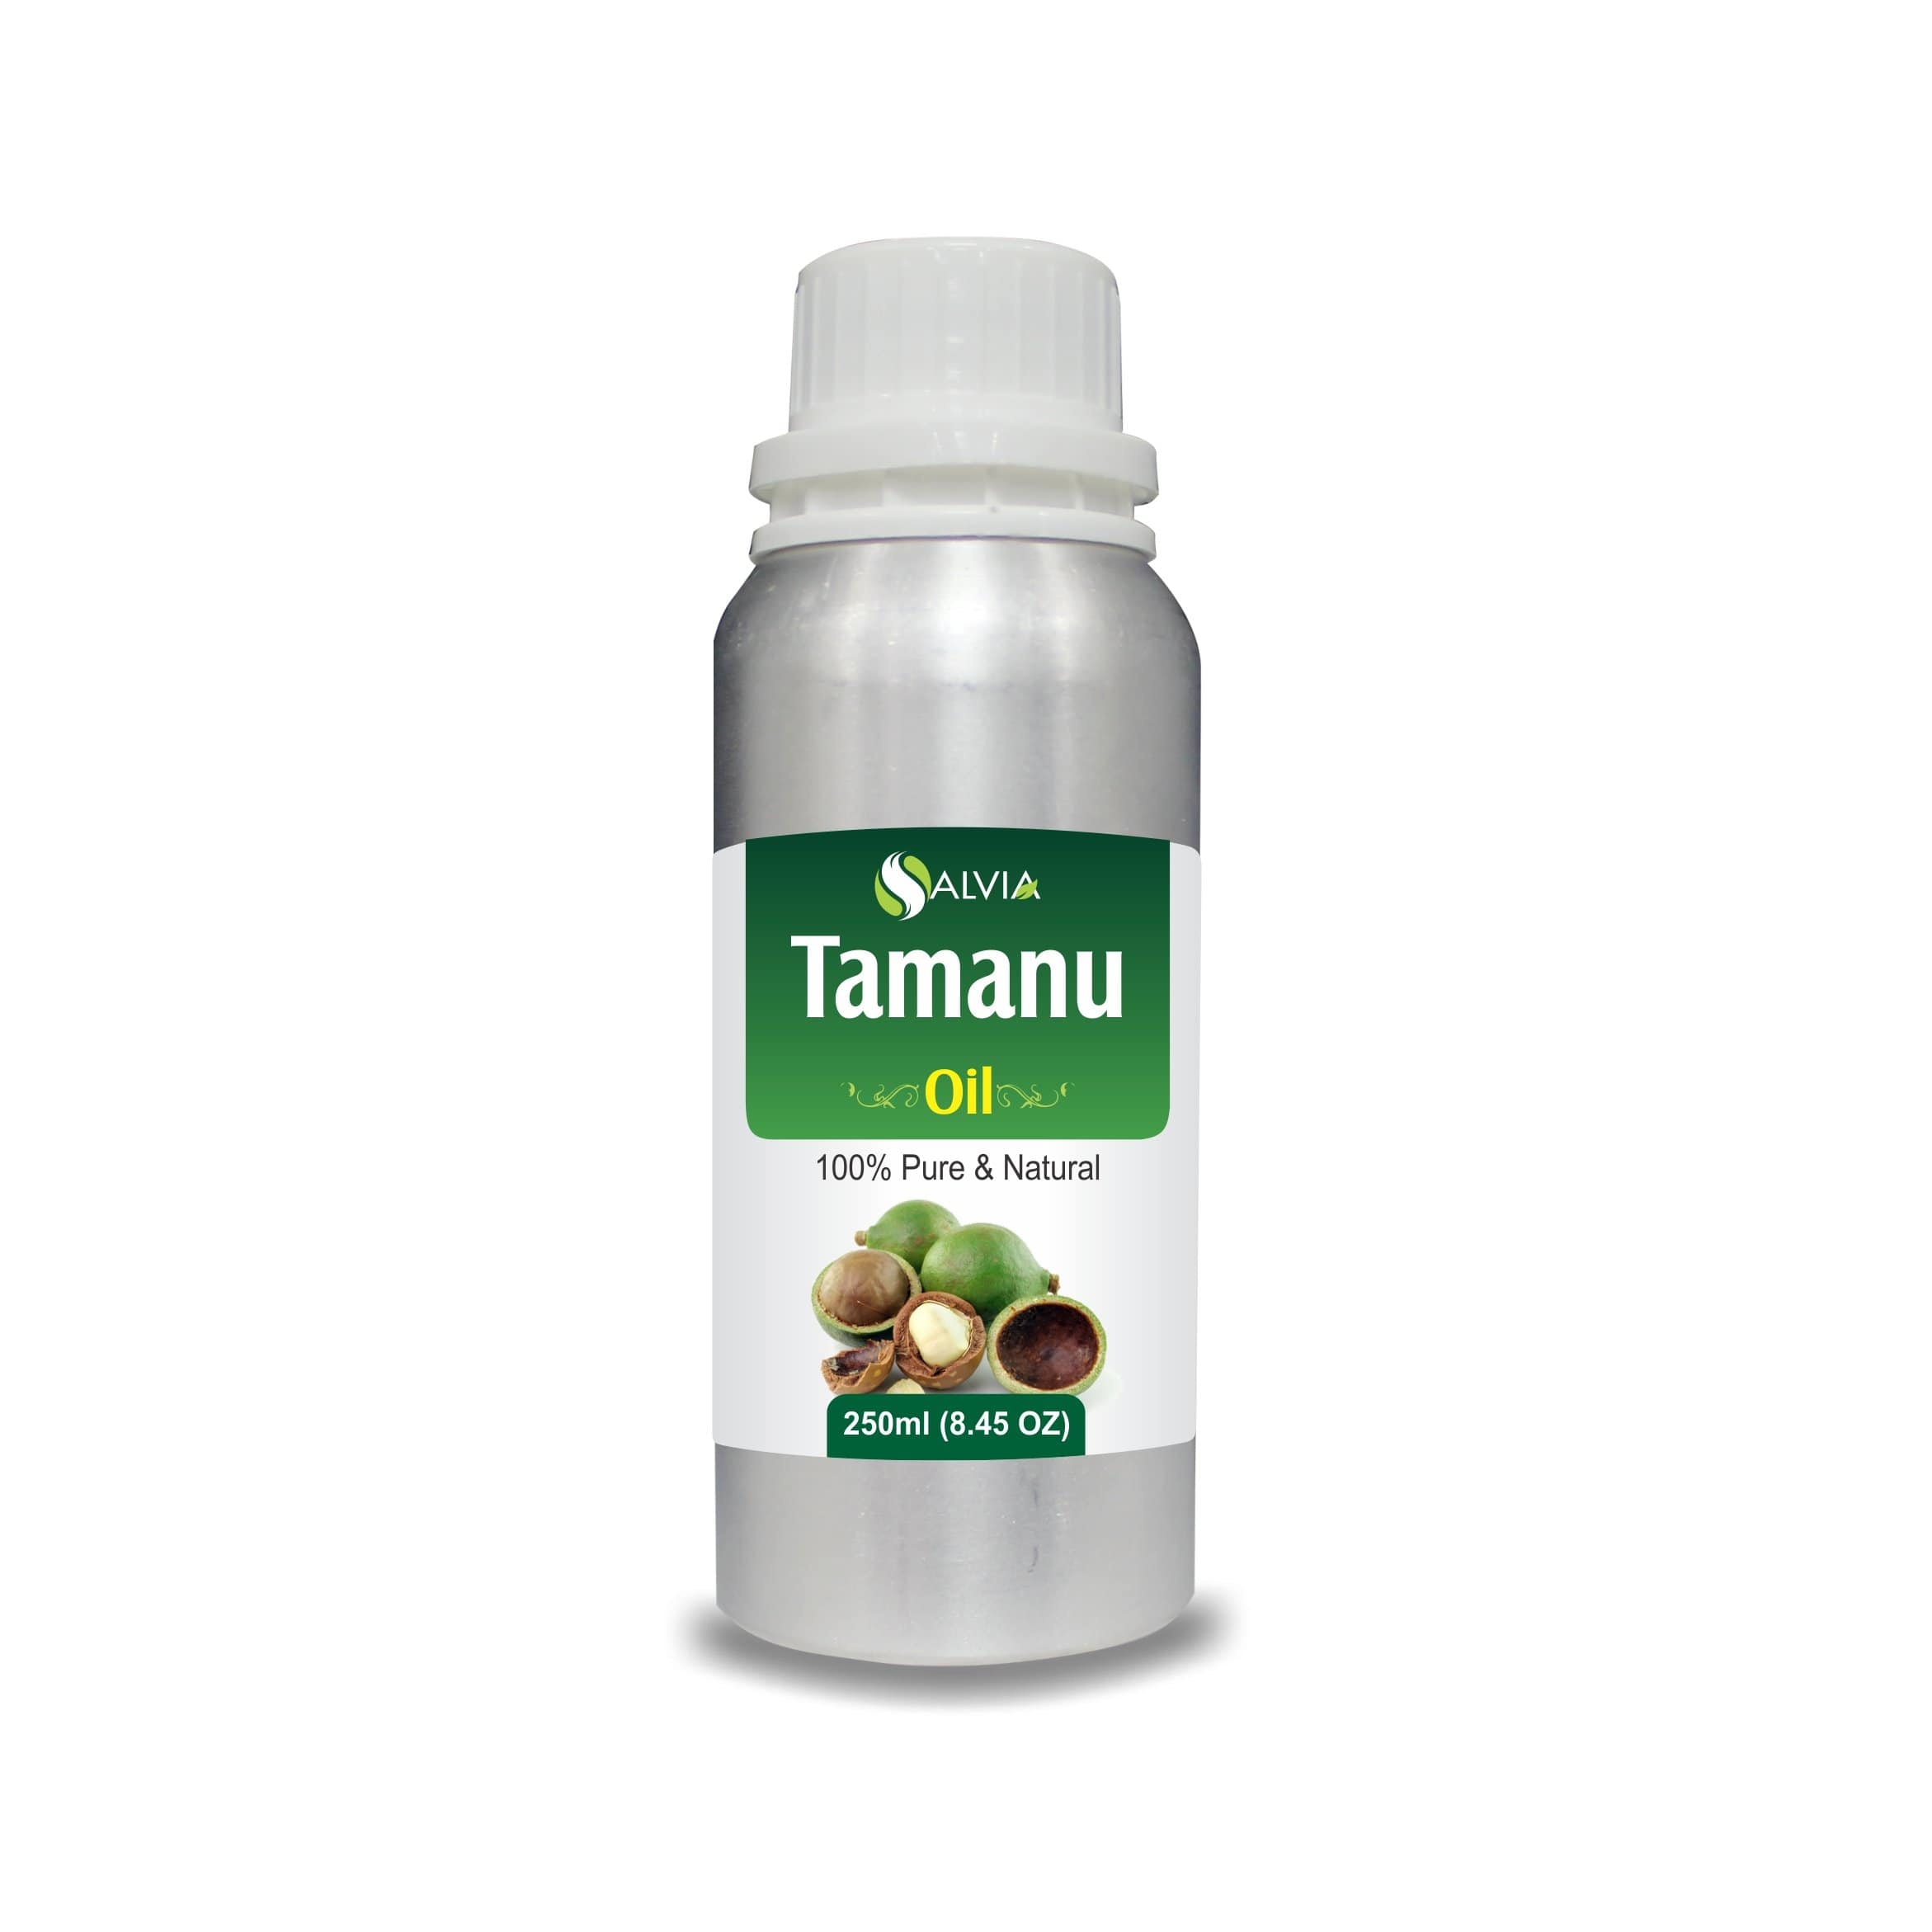 tamanu oil benefits